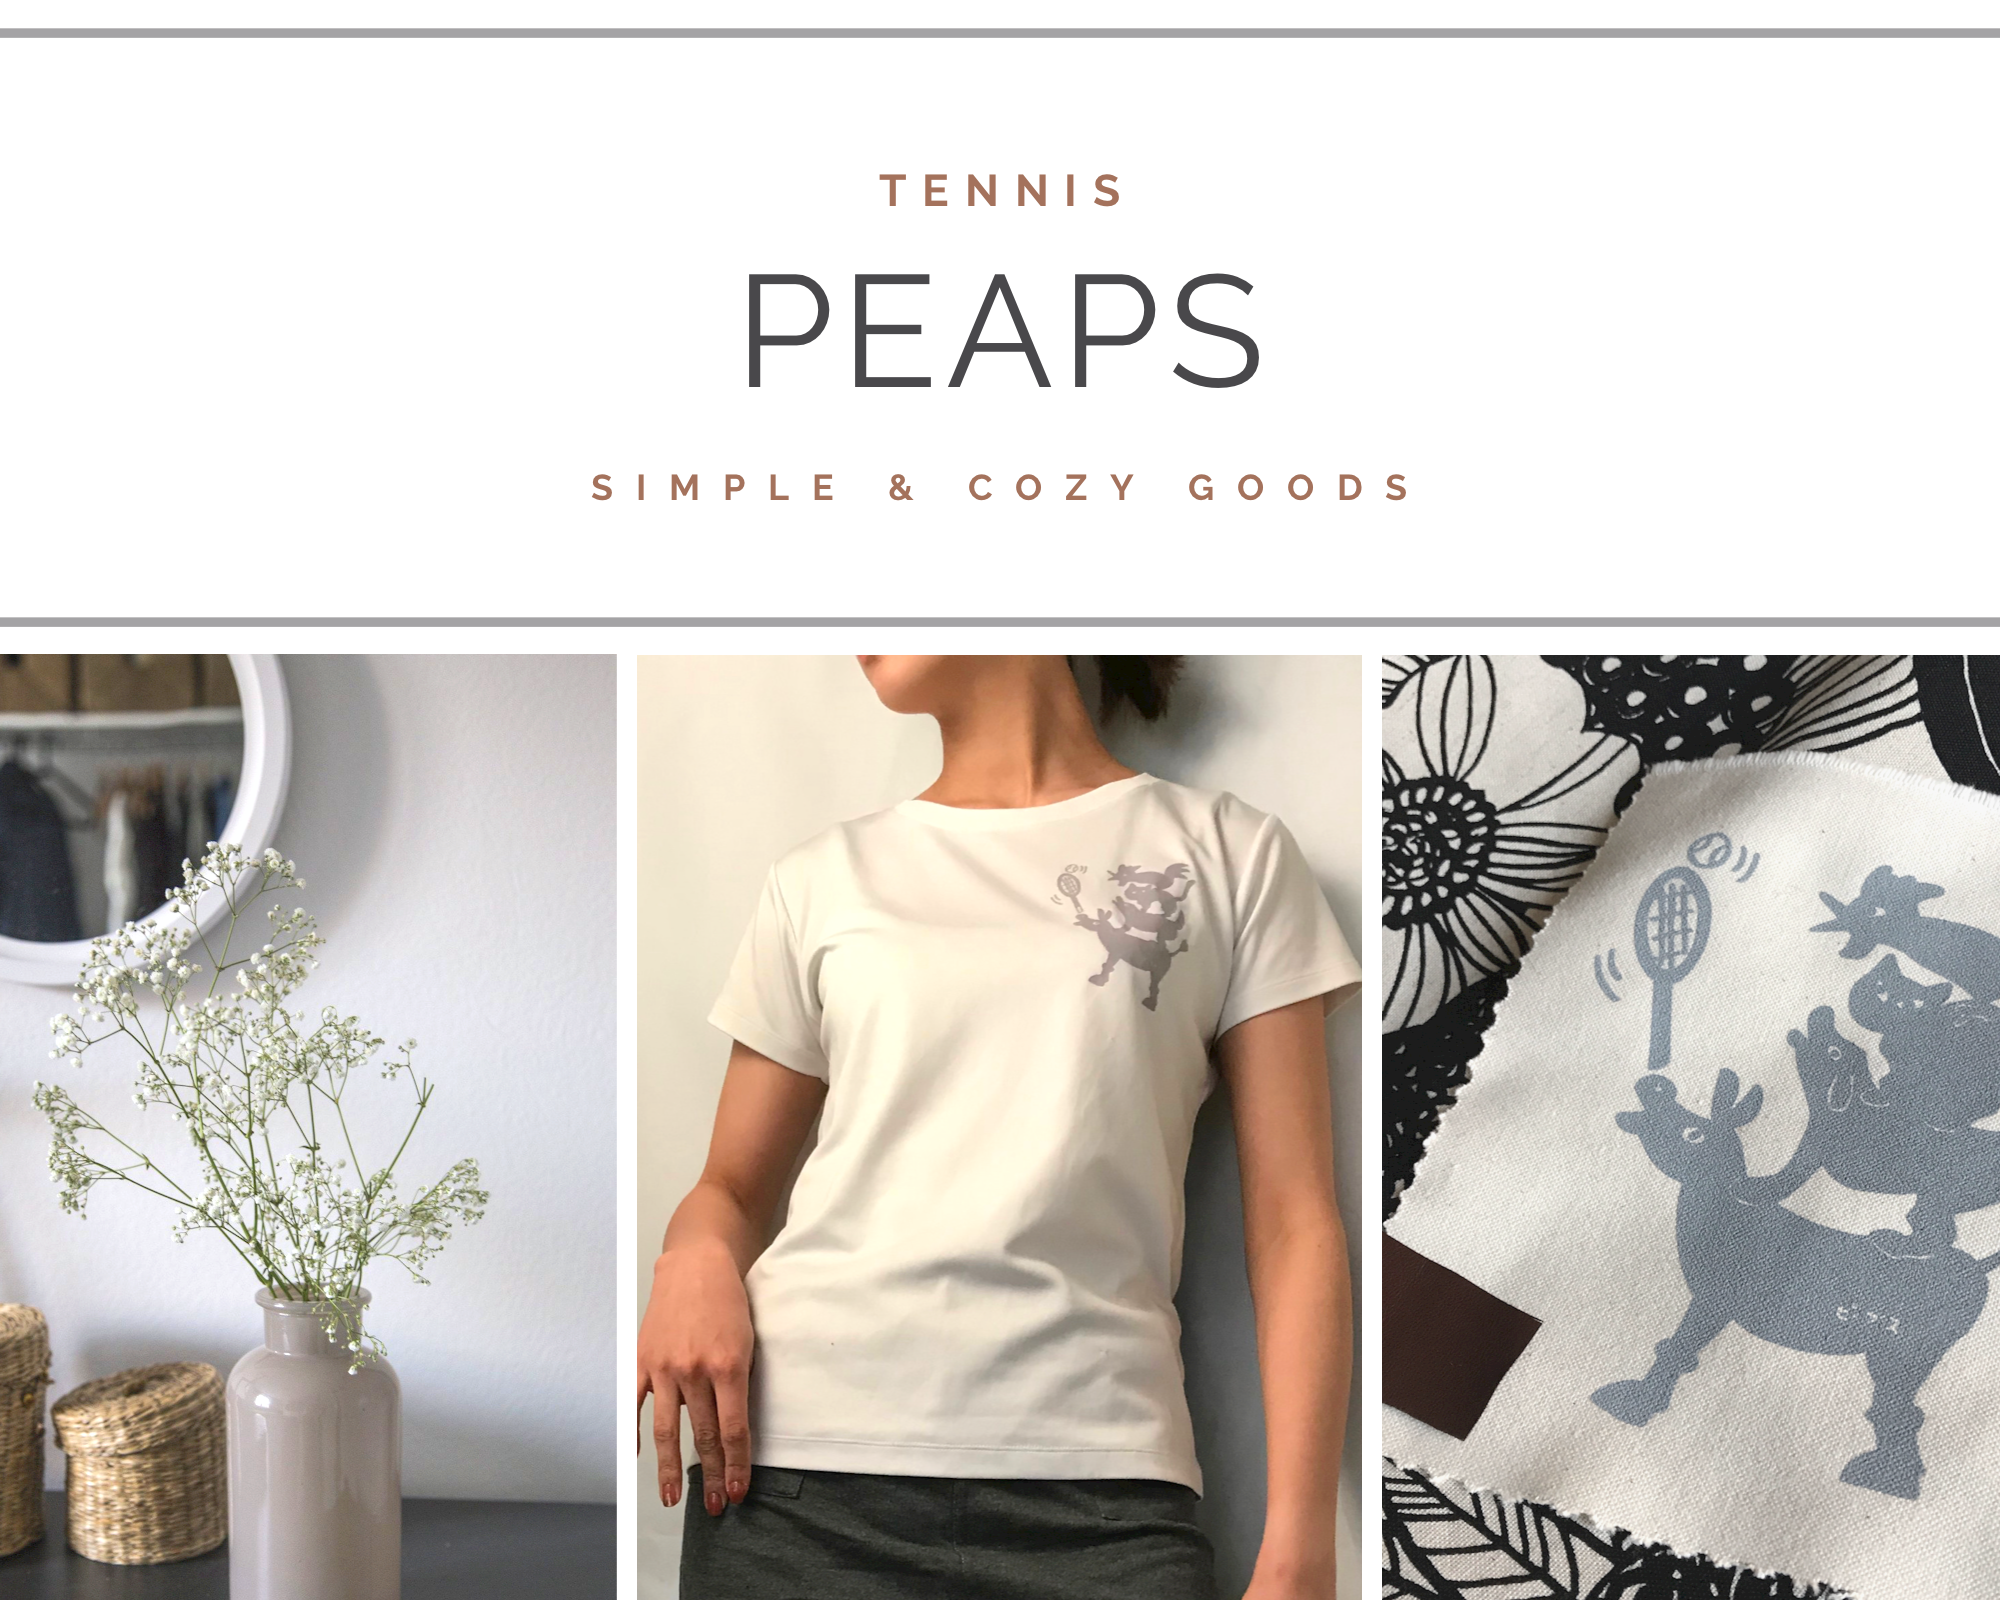 PEAPS tennis